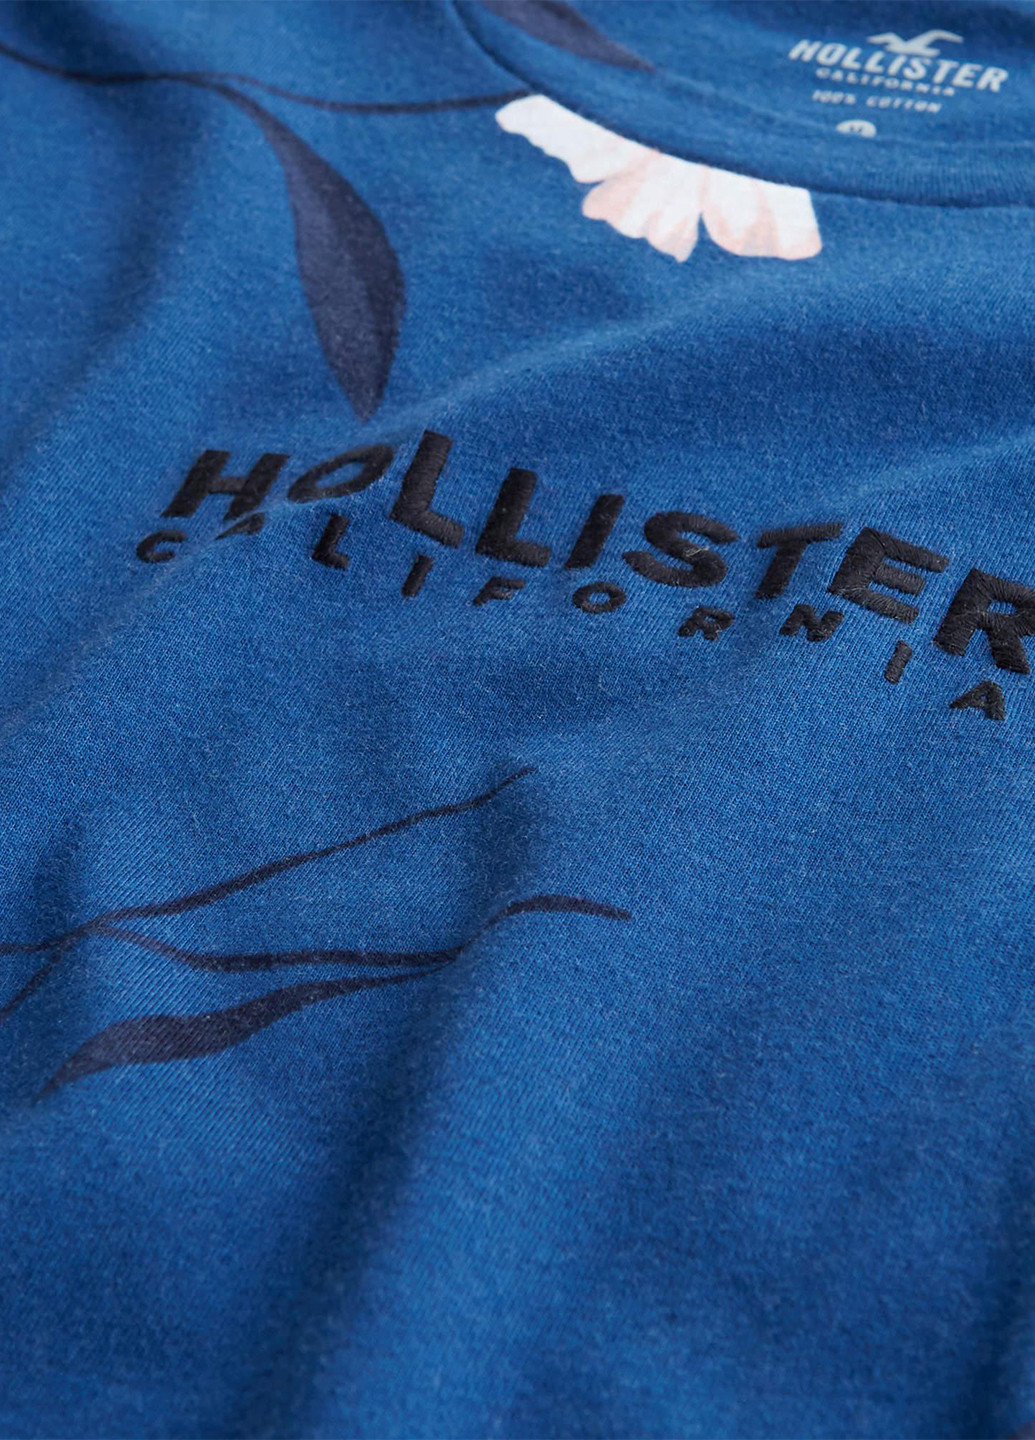 Синяя футболка Hollister